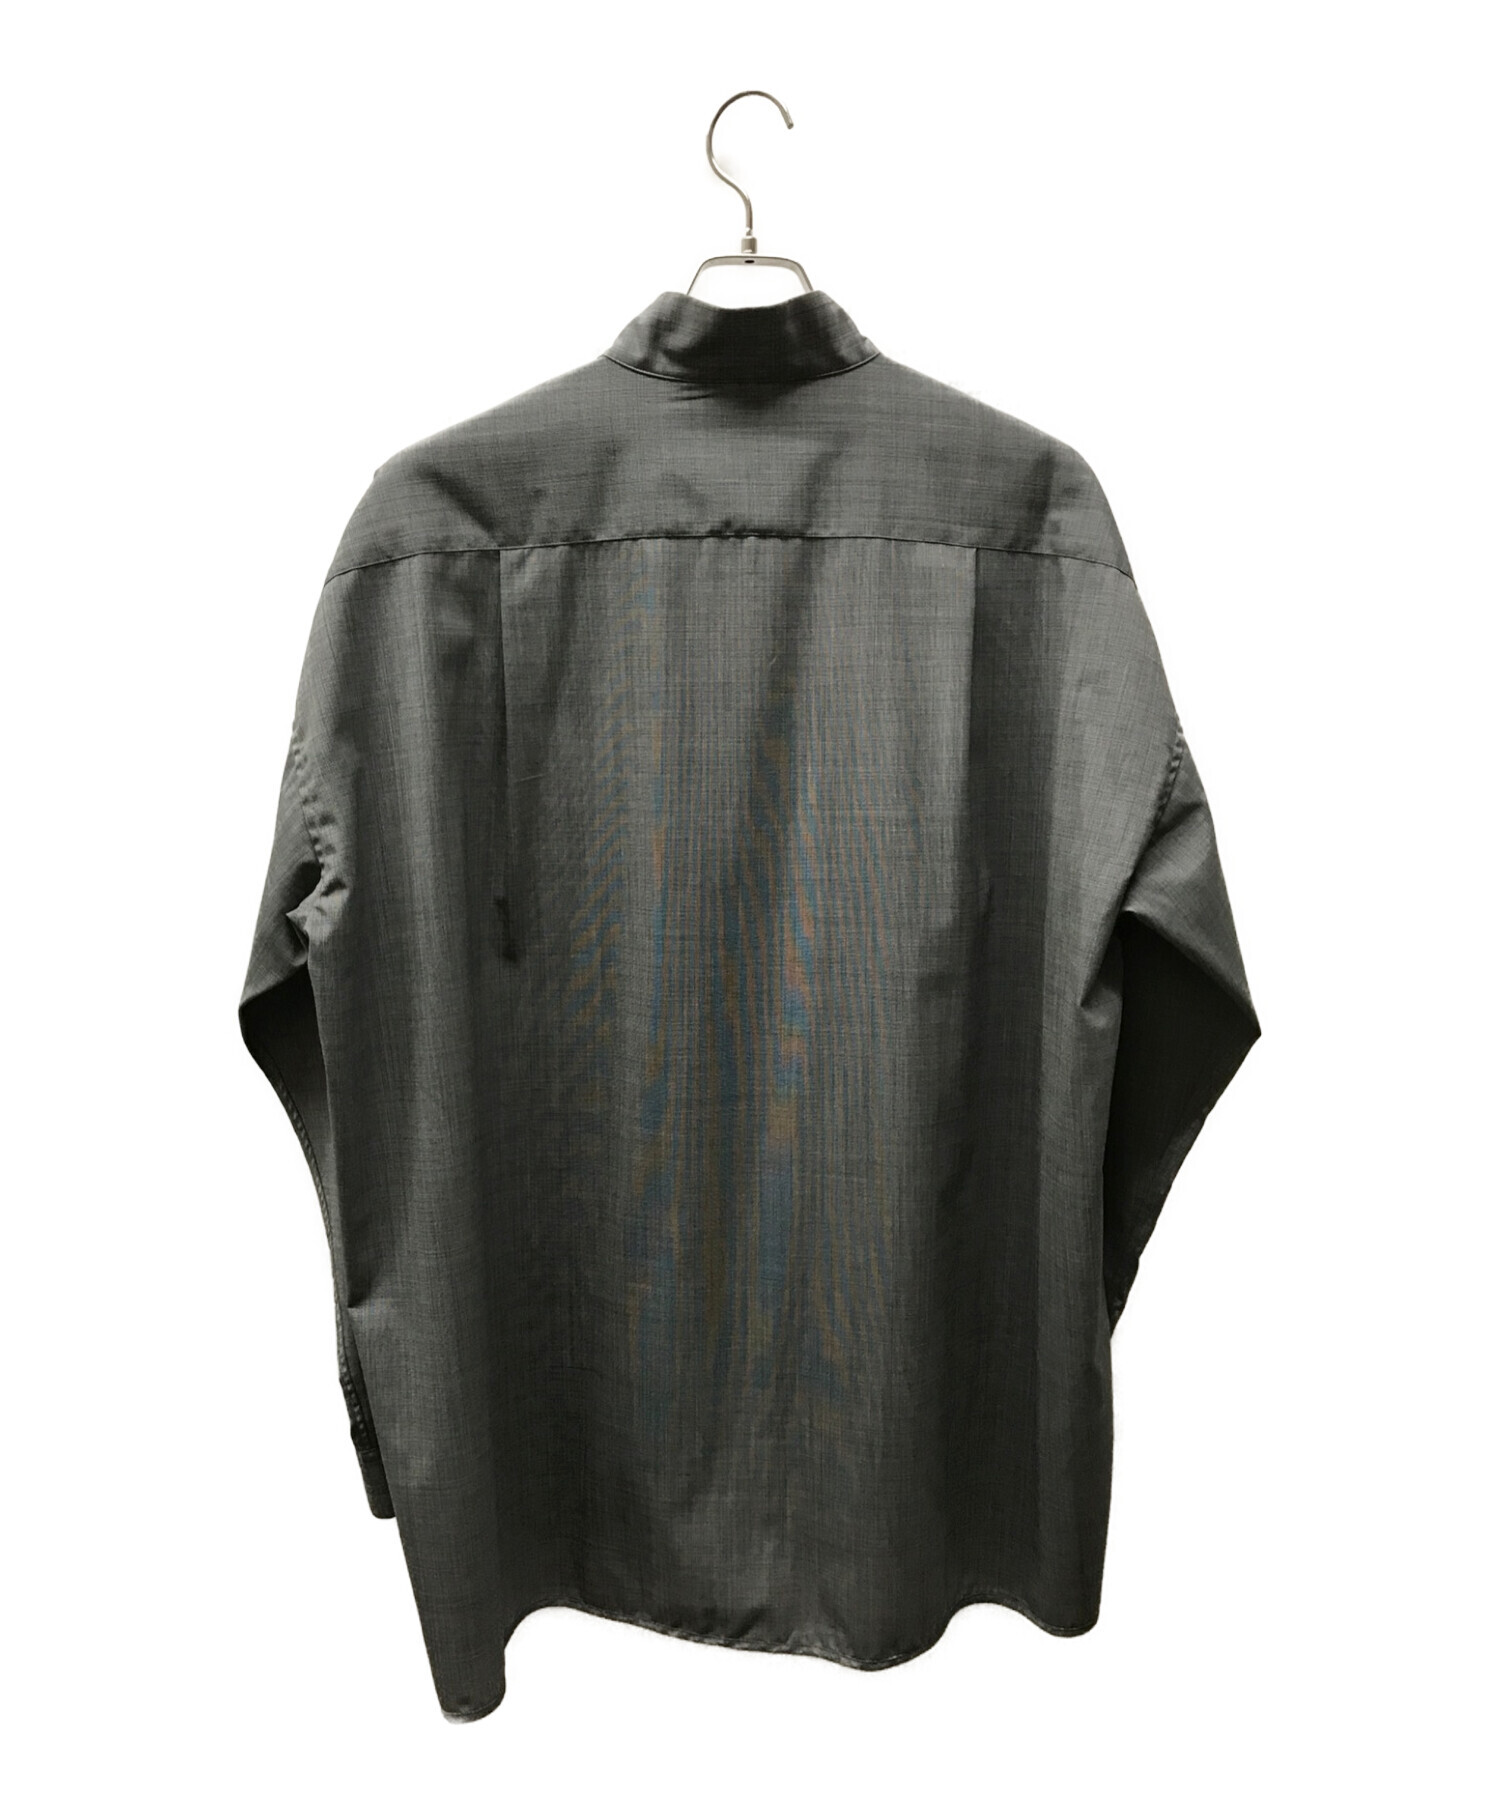 SOUMO (ソウモ) ジップシャツ/FULL ZIP SHIRTS グレー サイズ:02